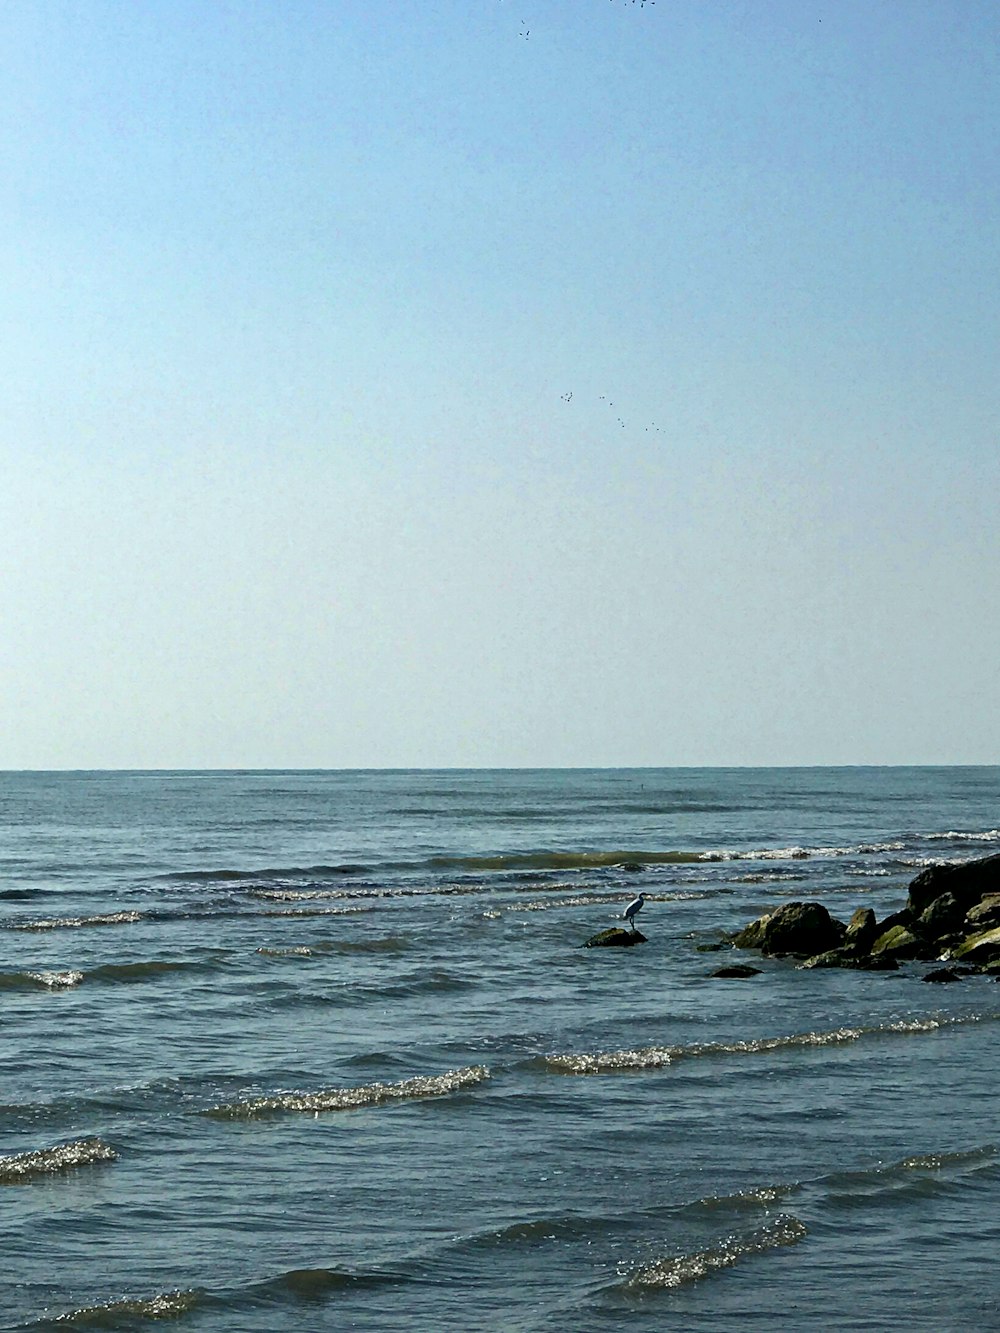 black rocks on sea under blue sky during daytime